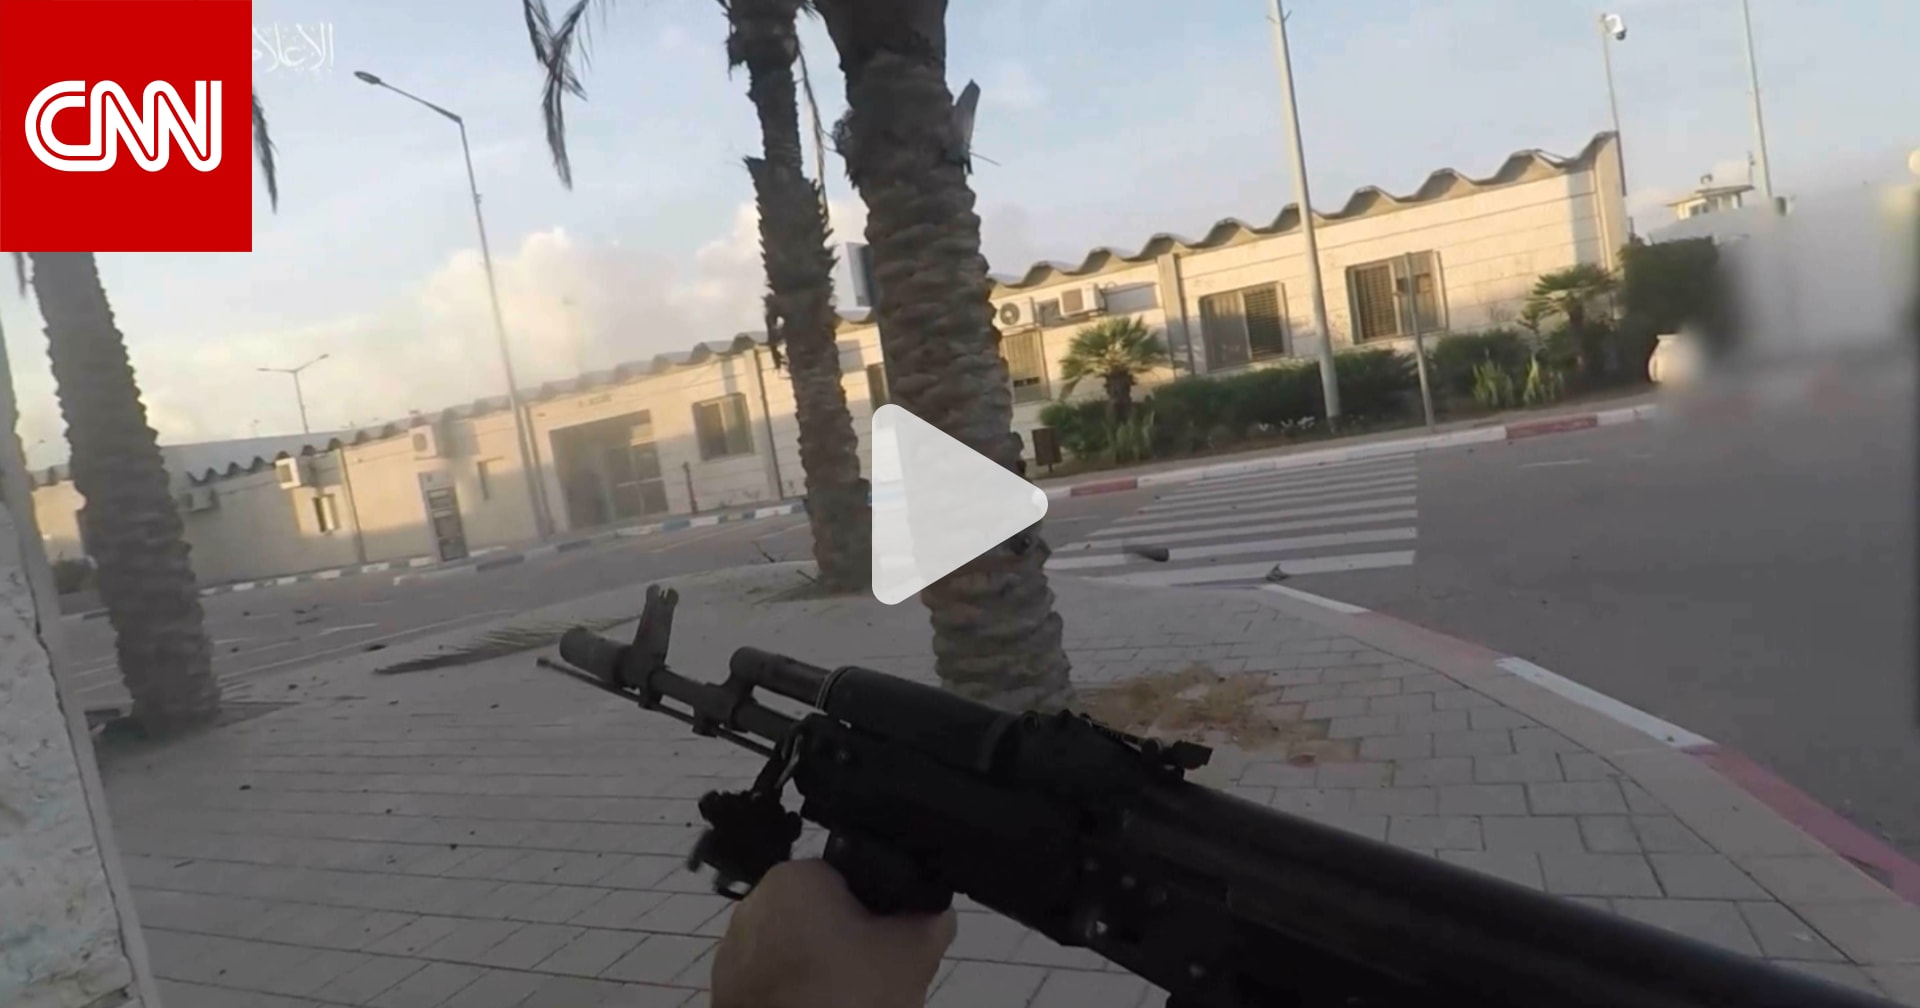 فيديو يُظهر معارك مسلحة في شوارع مدن إسرائيل بعد تسلل مسلحين من قطاع غزة إليها